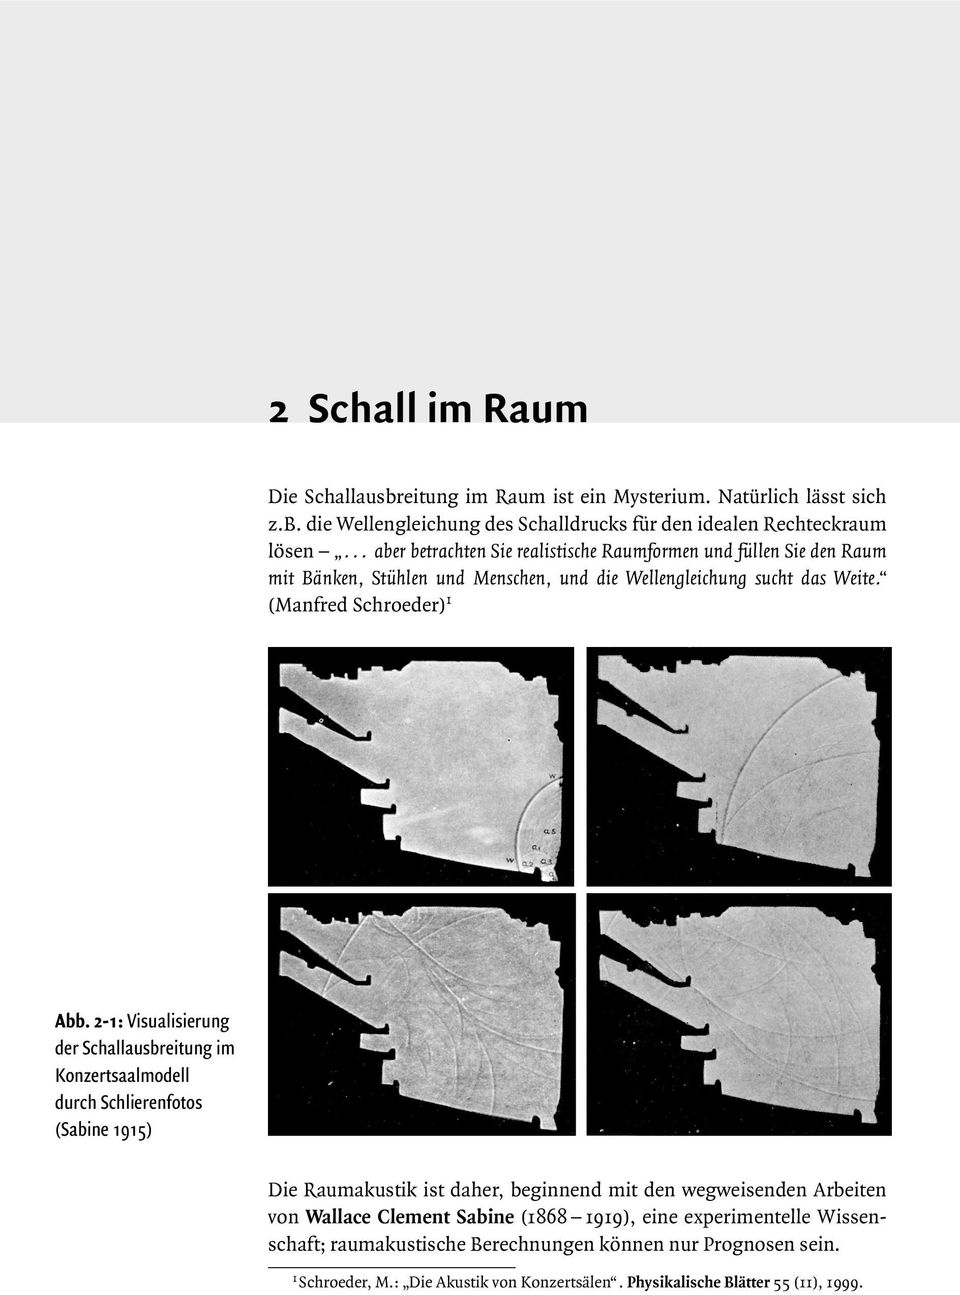 2-1: Visualisierung der Schallausbreitung im Konzertsaalmodell durch Schlierenfotos (Sabine 1915) Die Raumakustik ist daher, beginnend mit den wegweisenden Arbeiten von Wallace